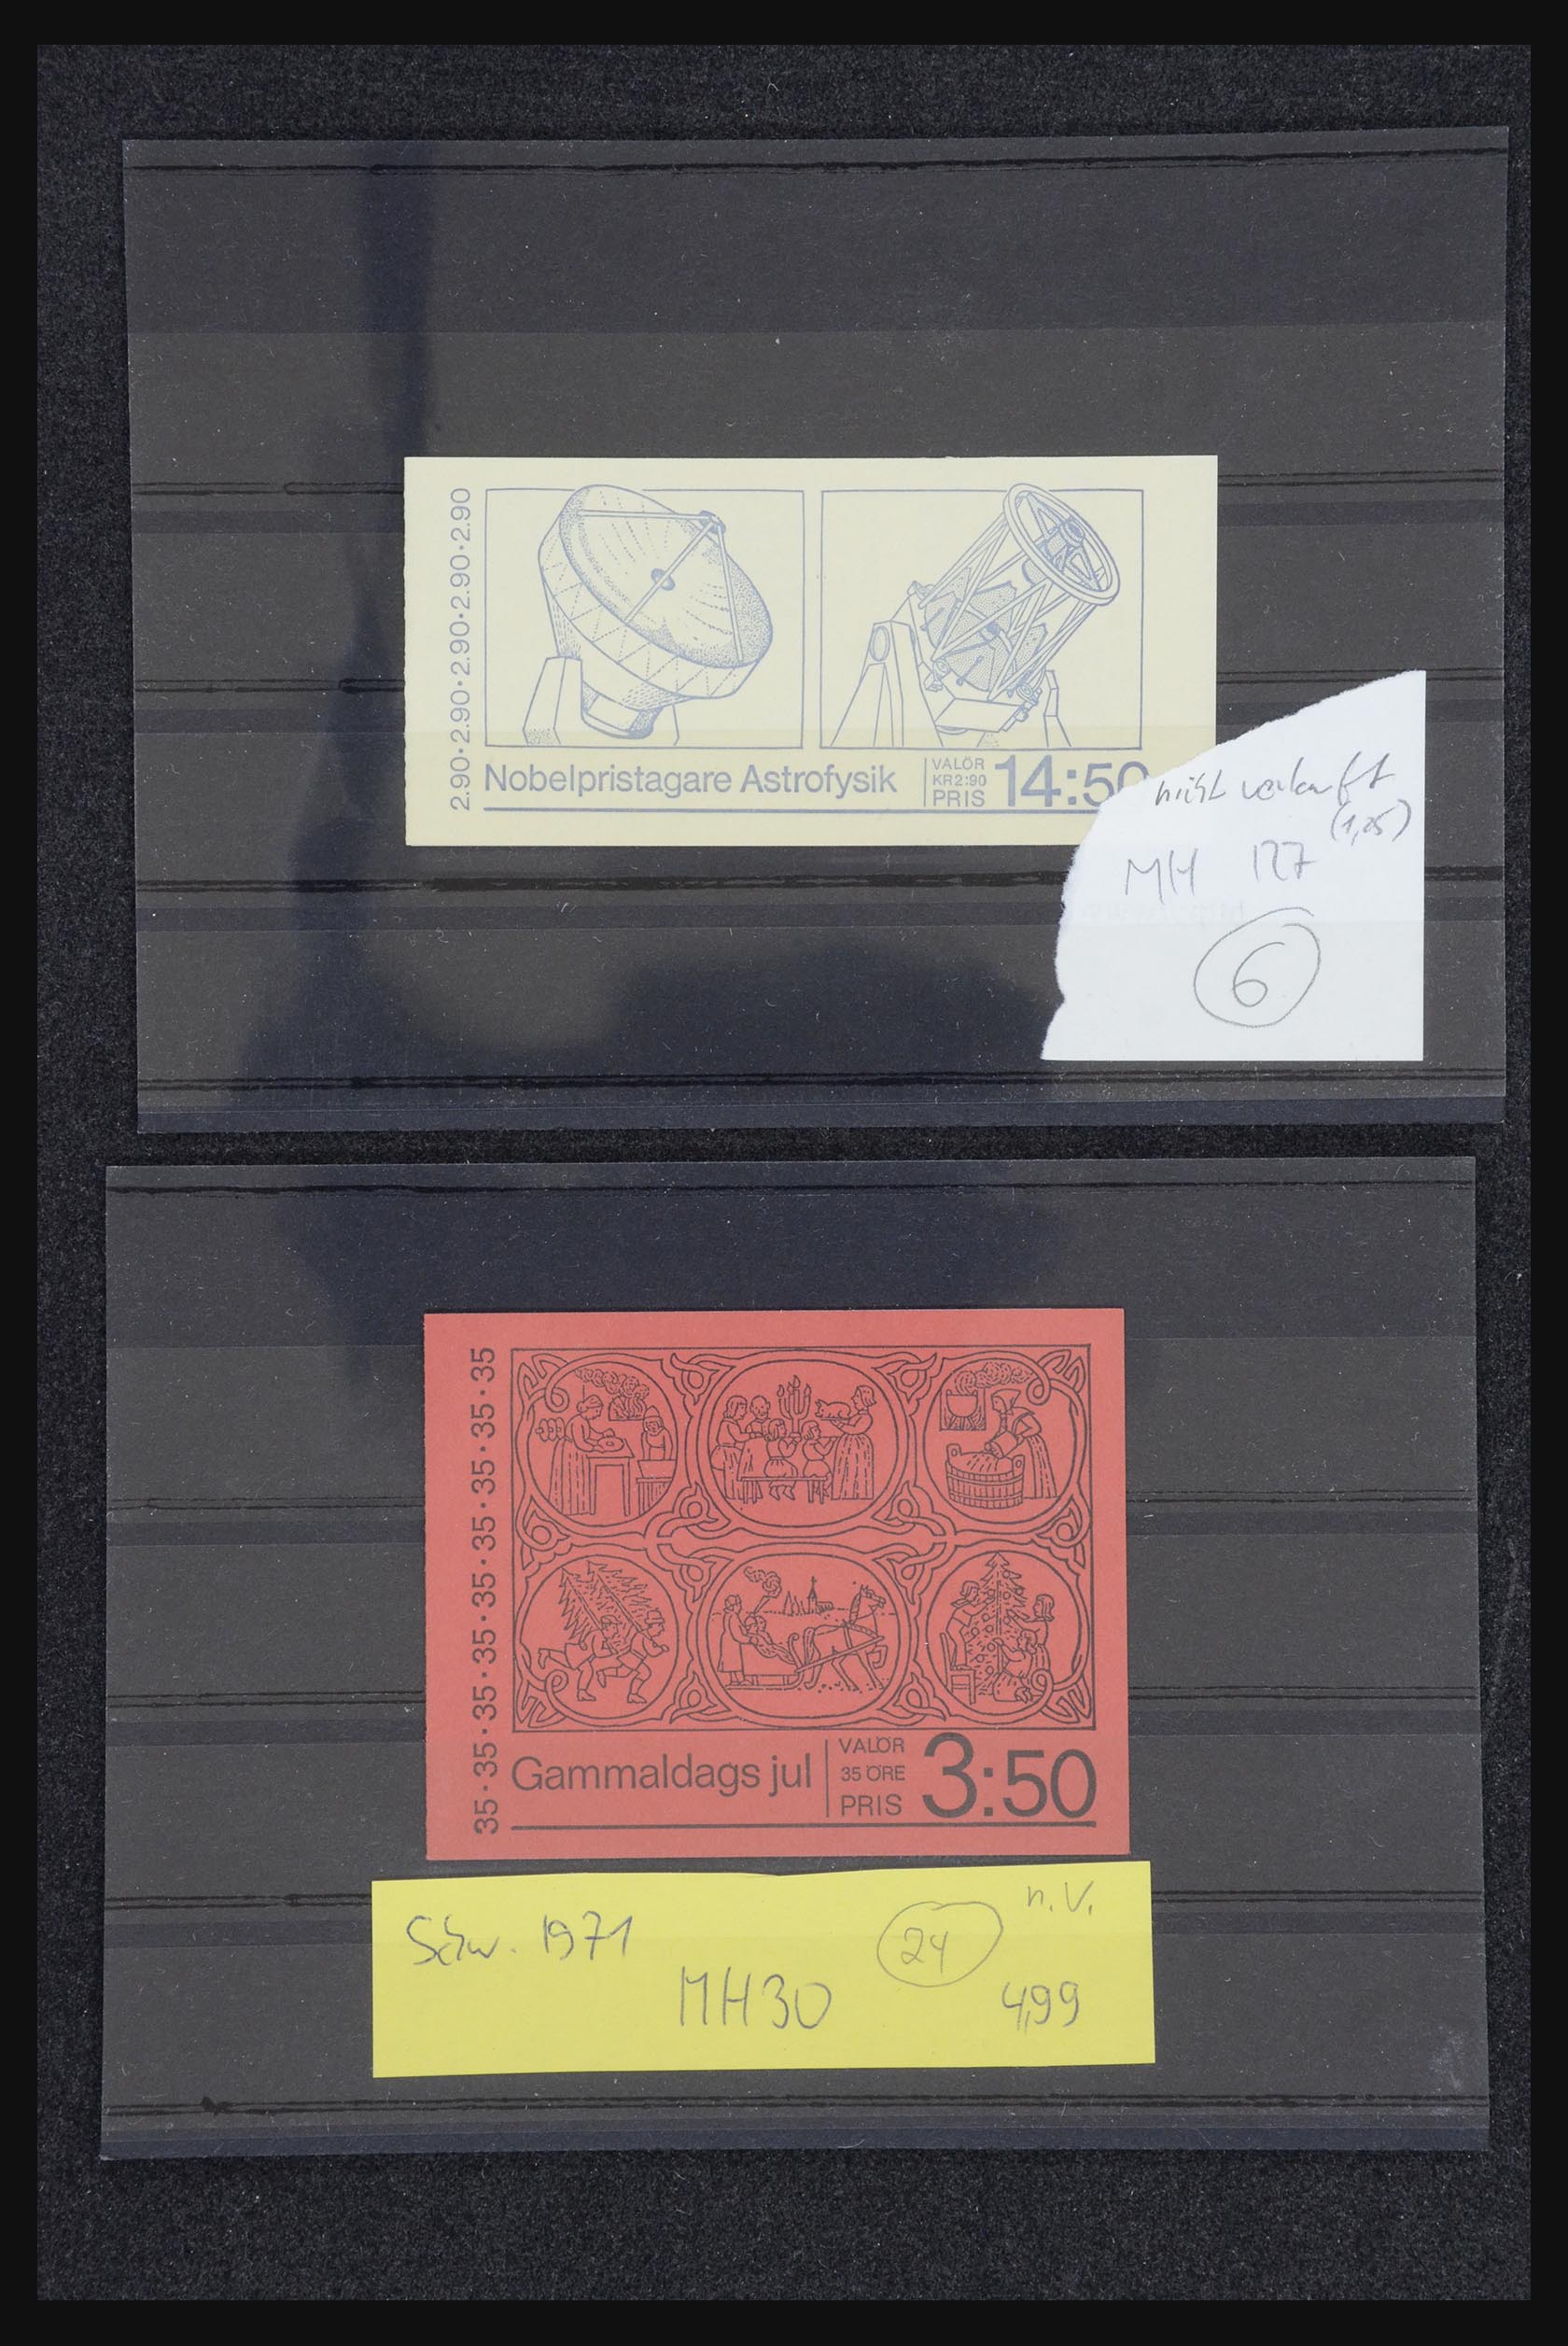 32026 038 - 32026 Sweden stampbooklets 1949-1990.